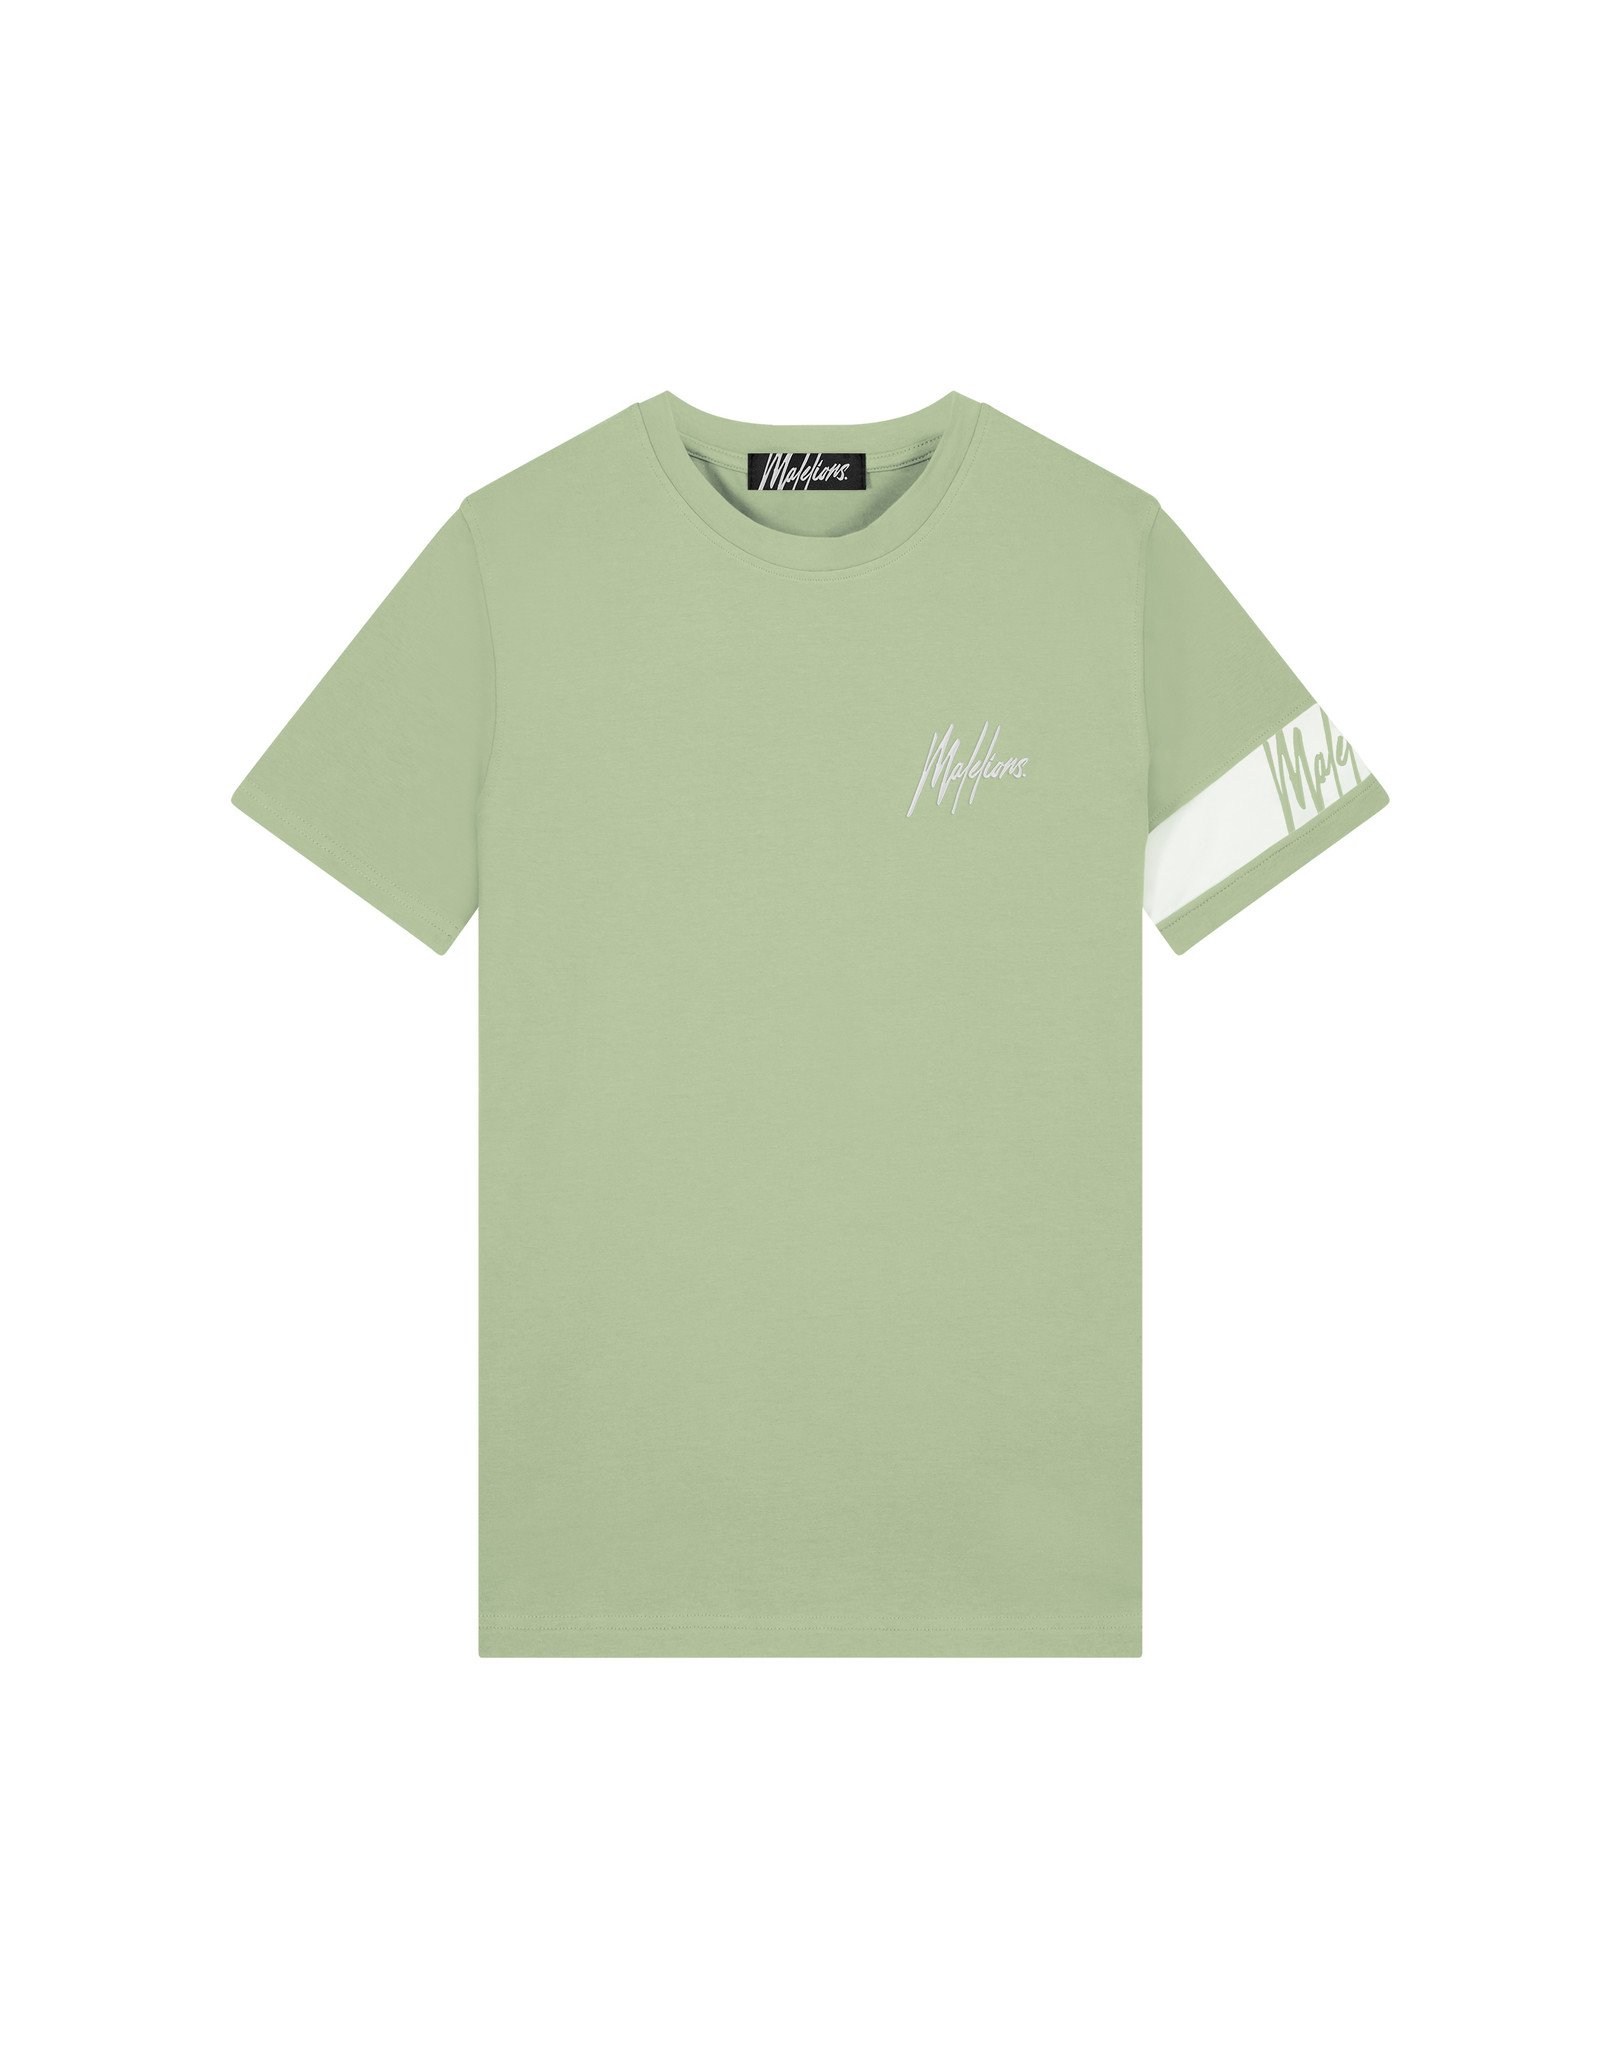 Malelions Men Captain T-Shirt - Green/White